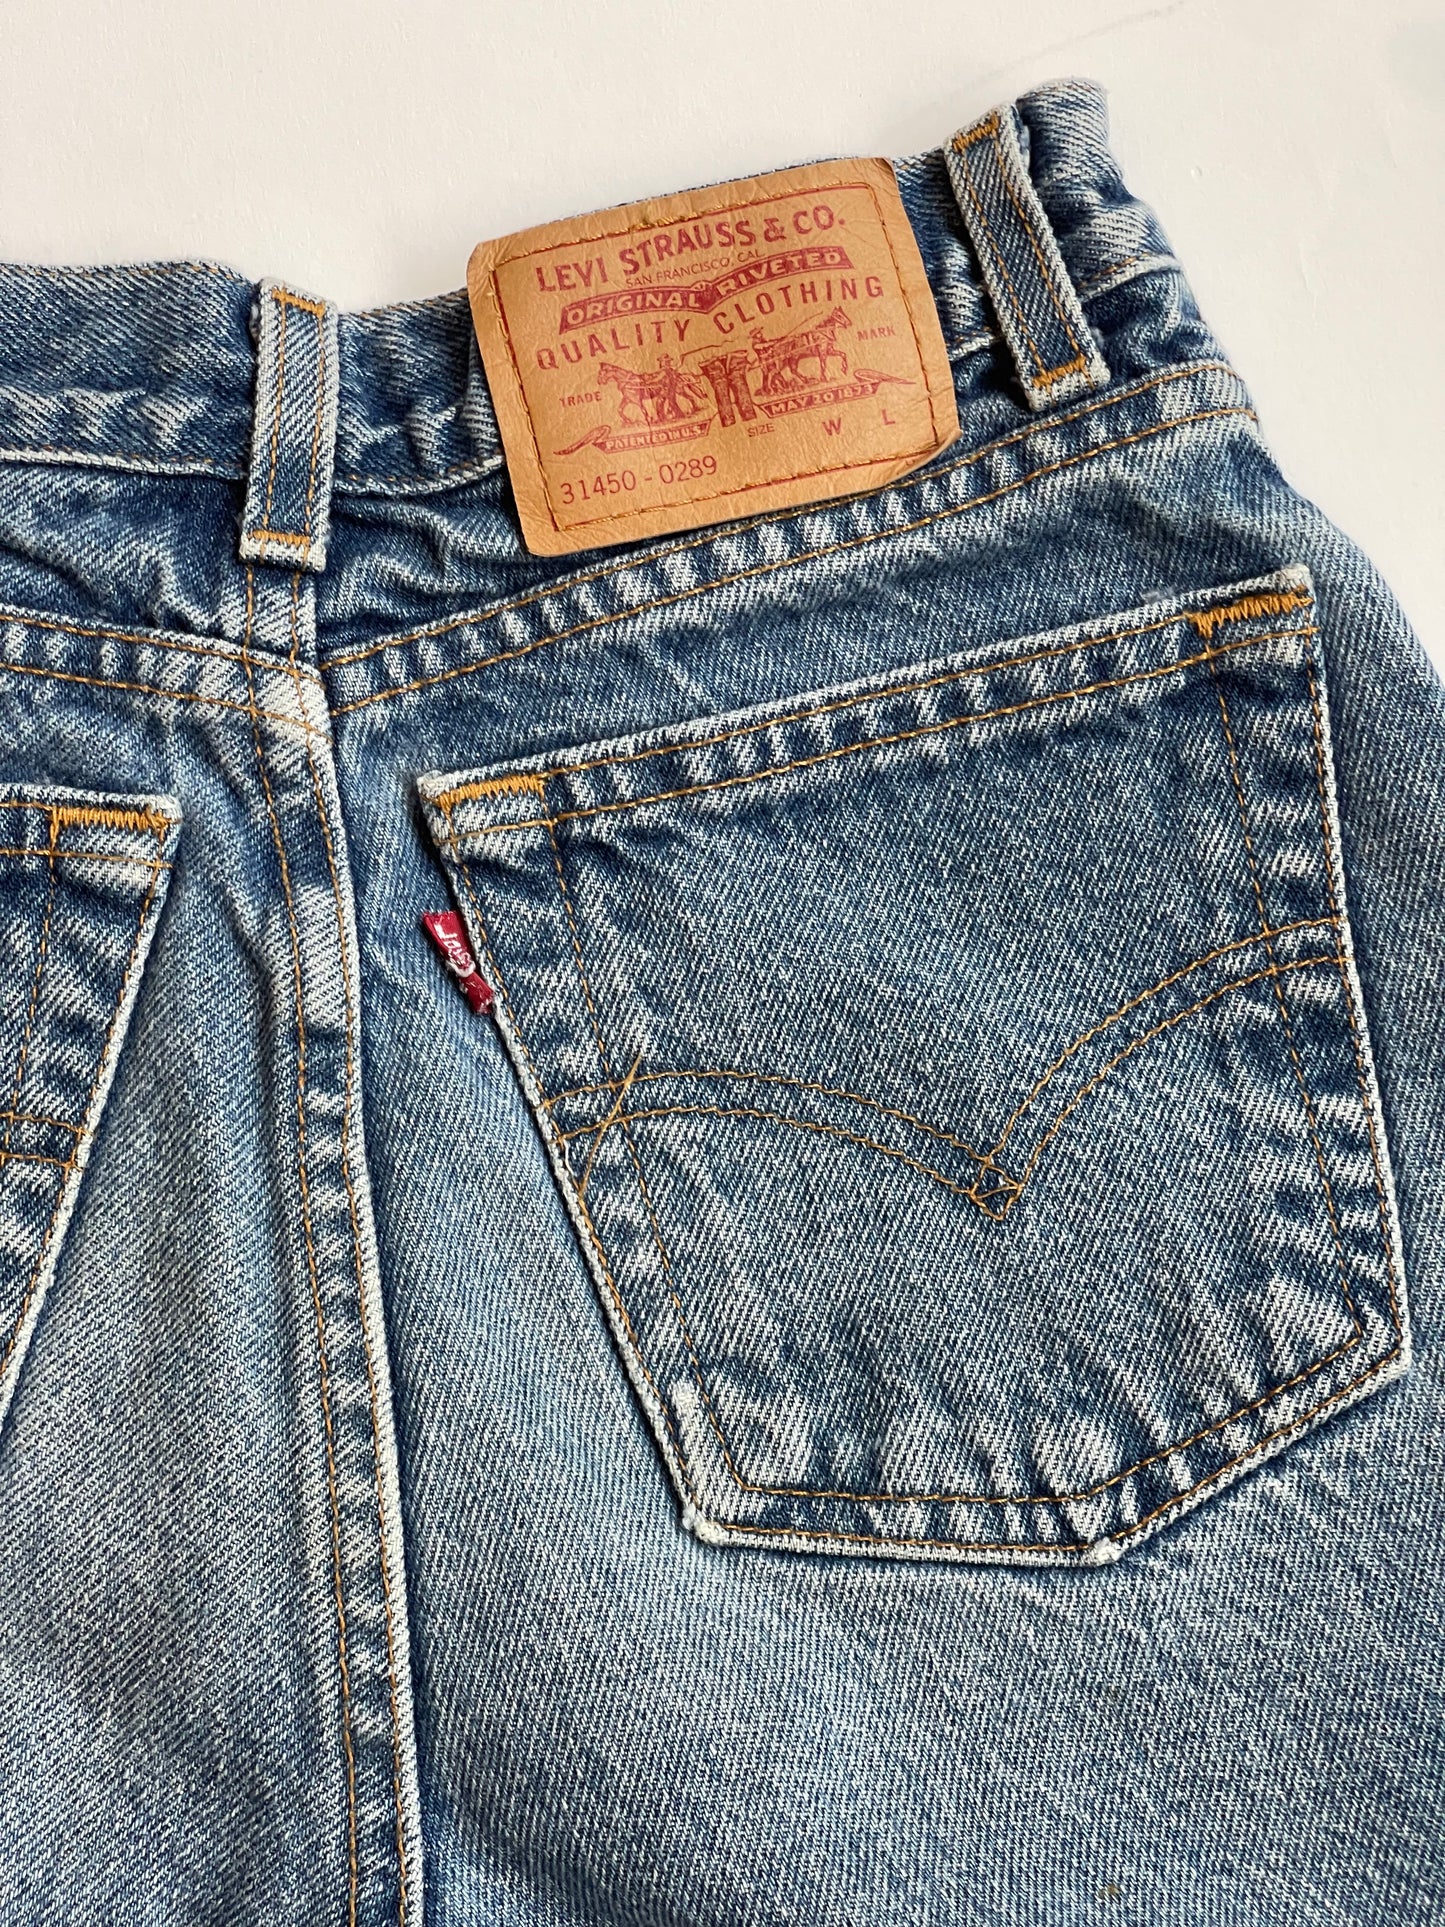 Vintage High-rise Levi's cutoff shorts - 24” W